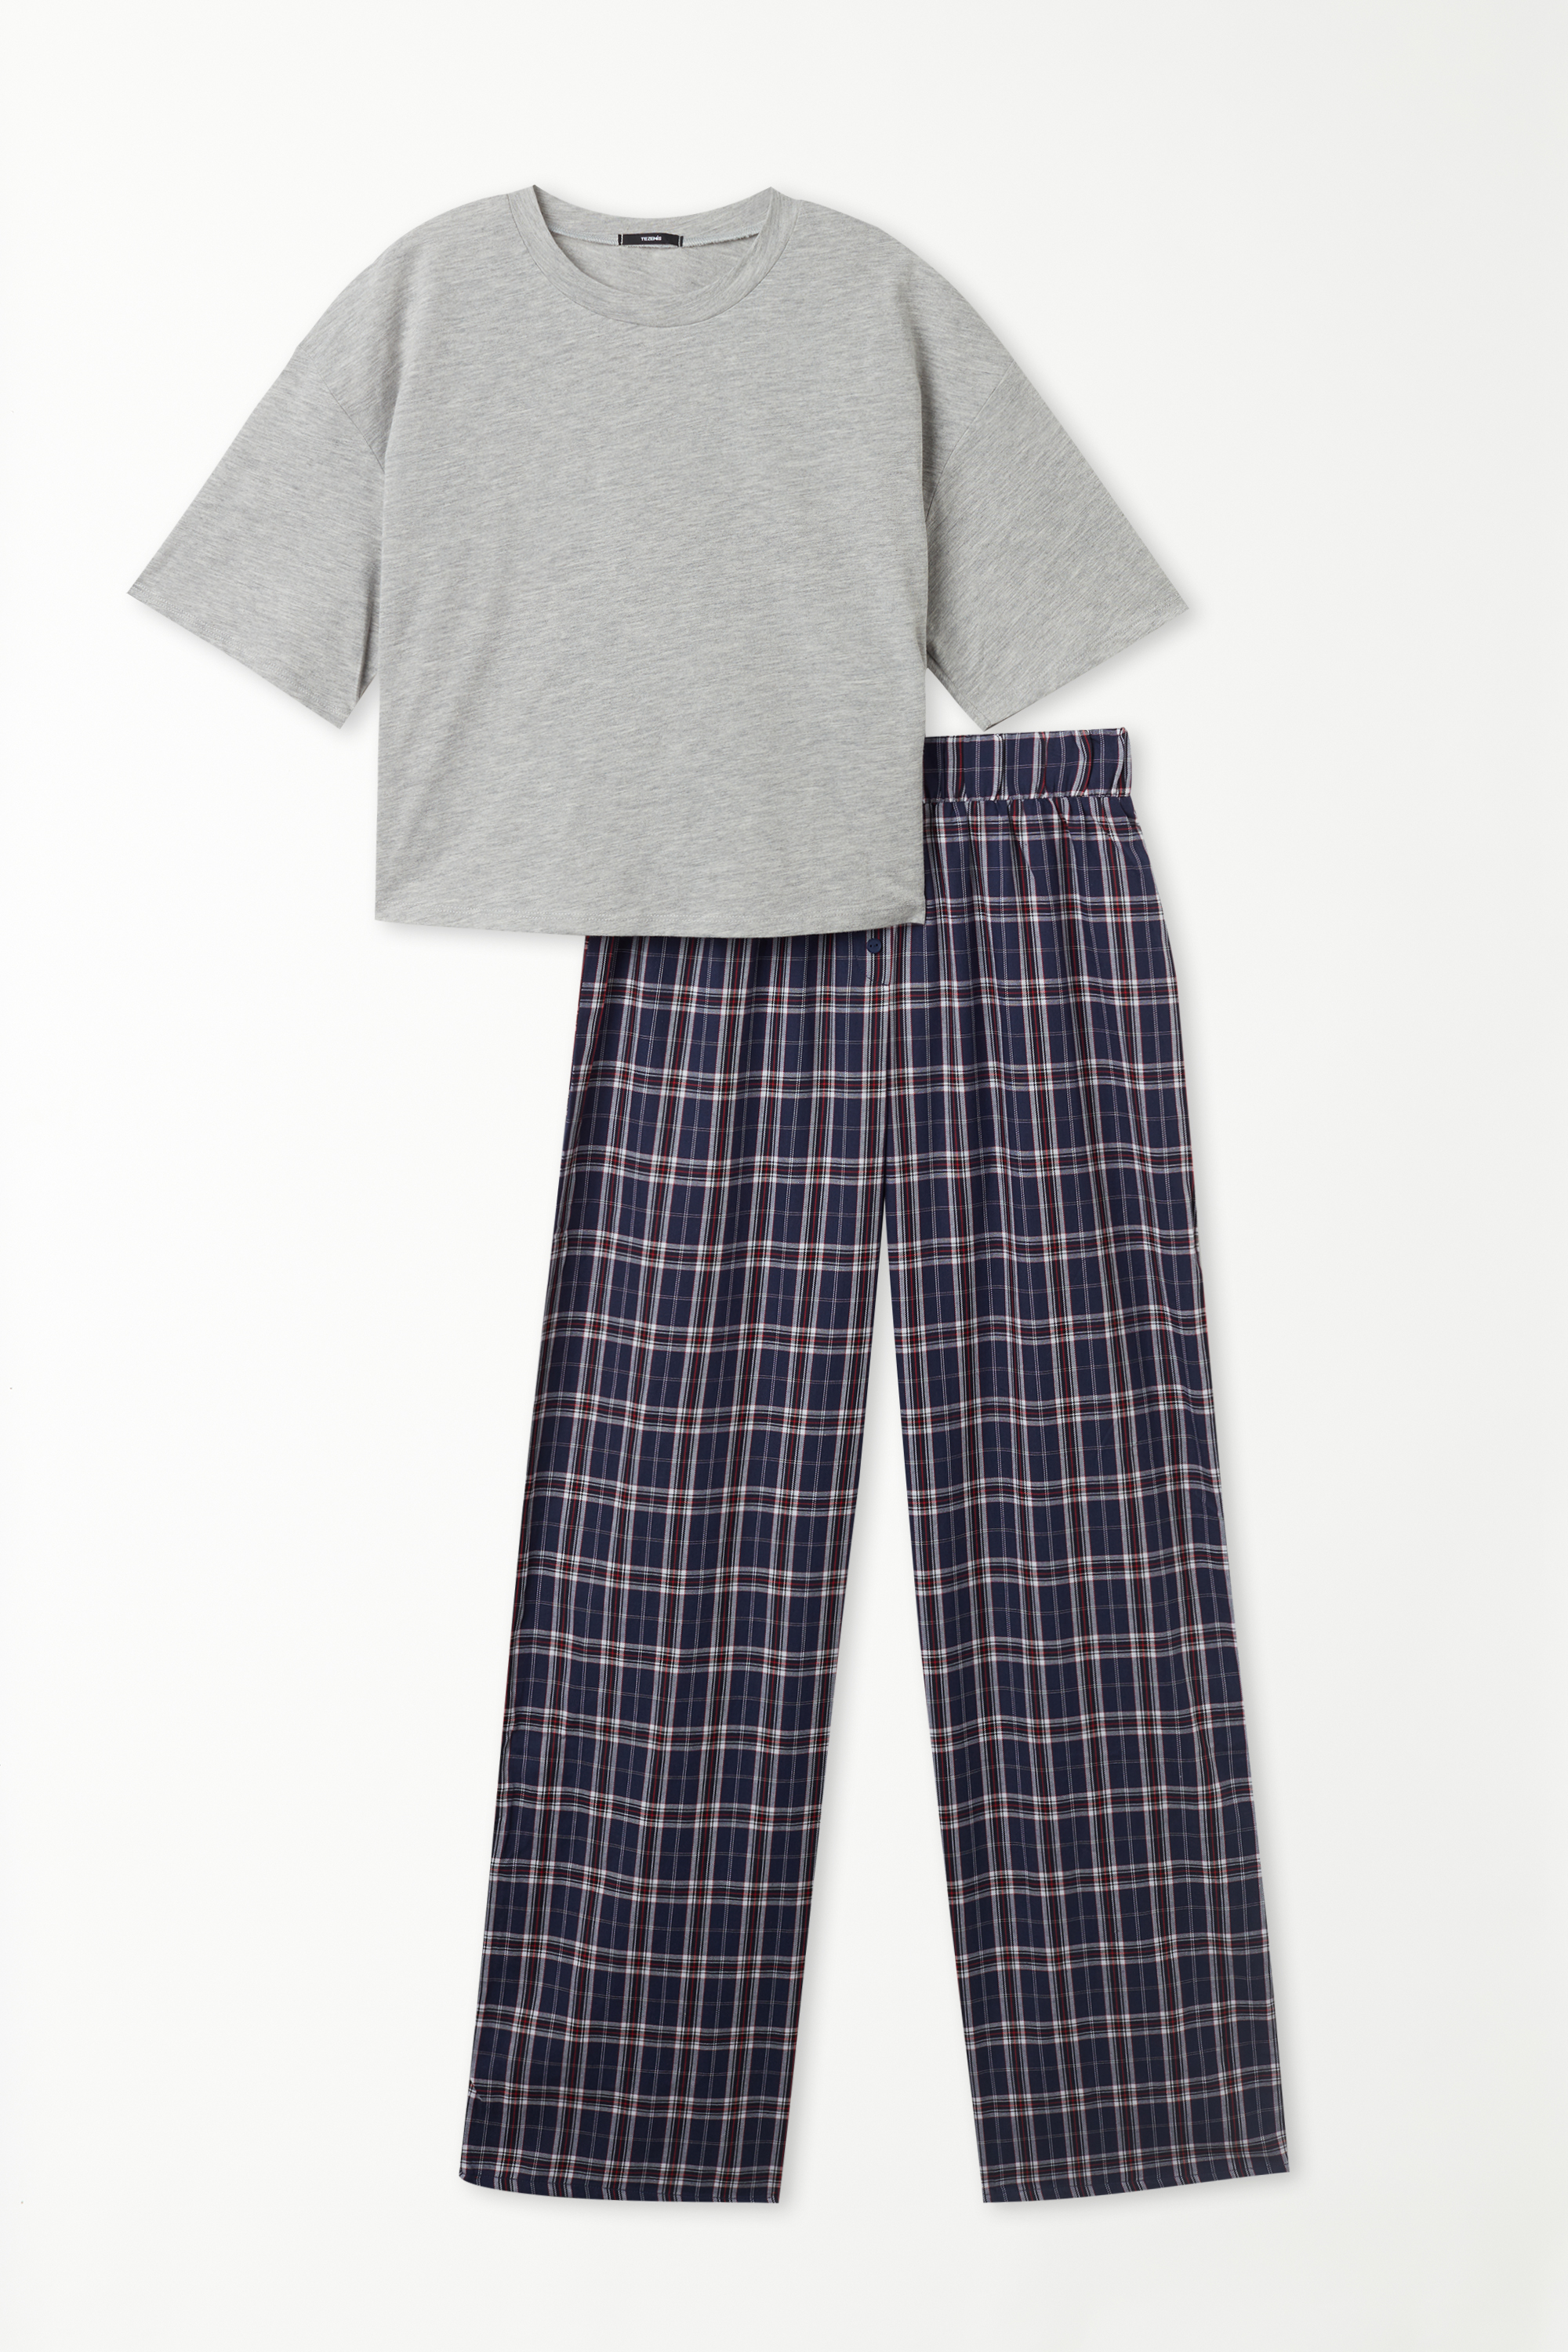 Pyjama mit halblangen Ärmeln und langer Hose aus Baumwolltuch